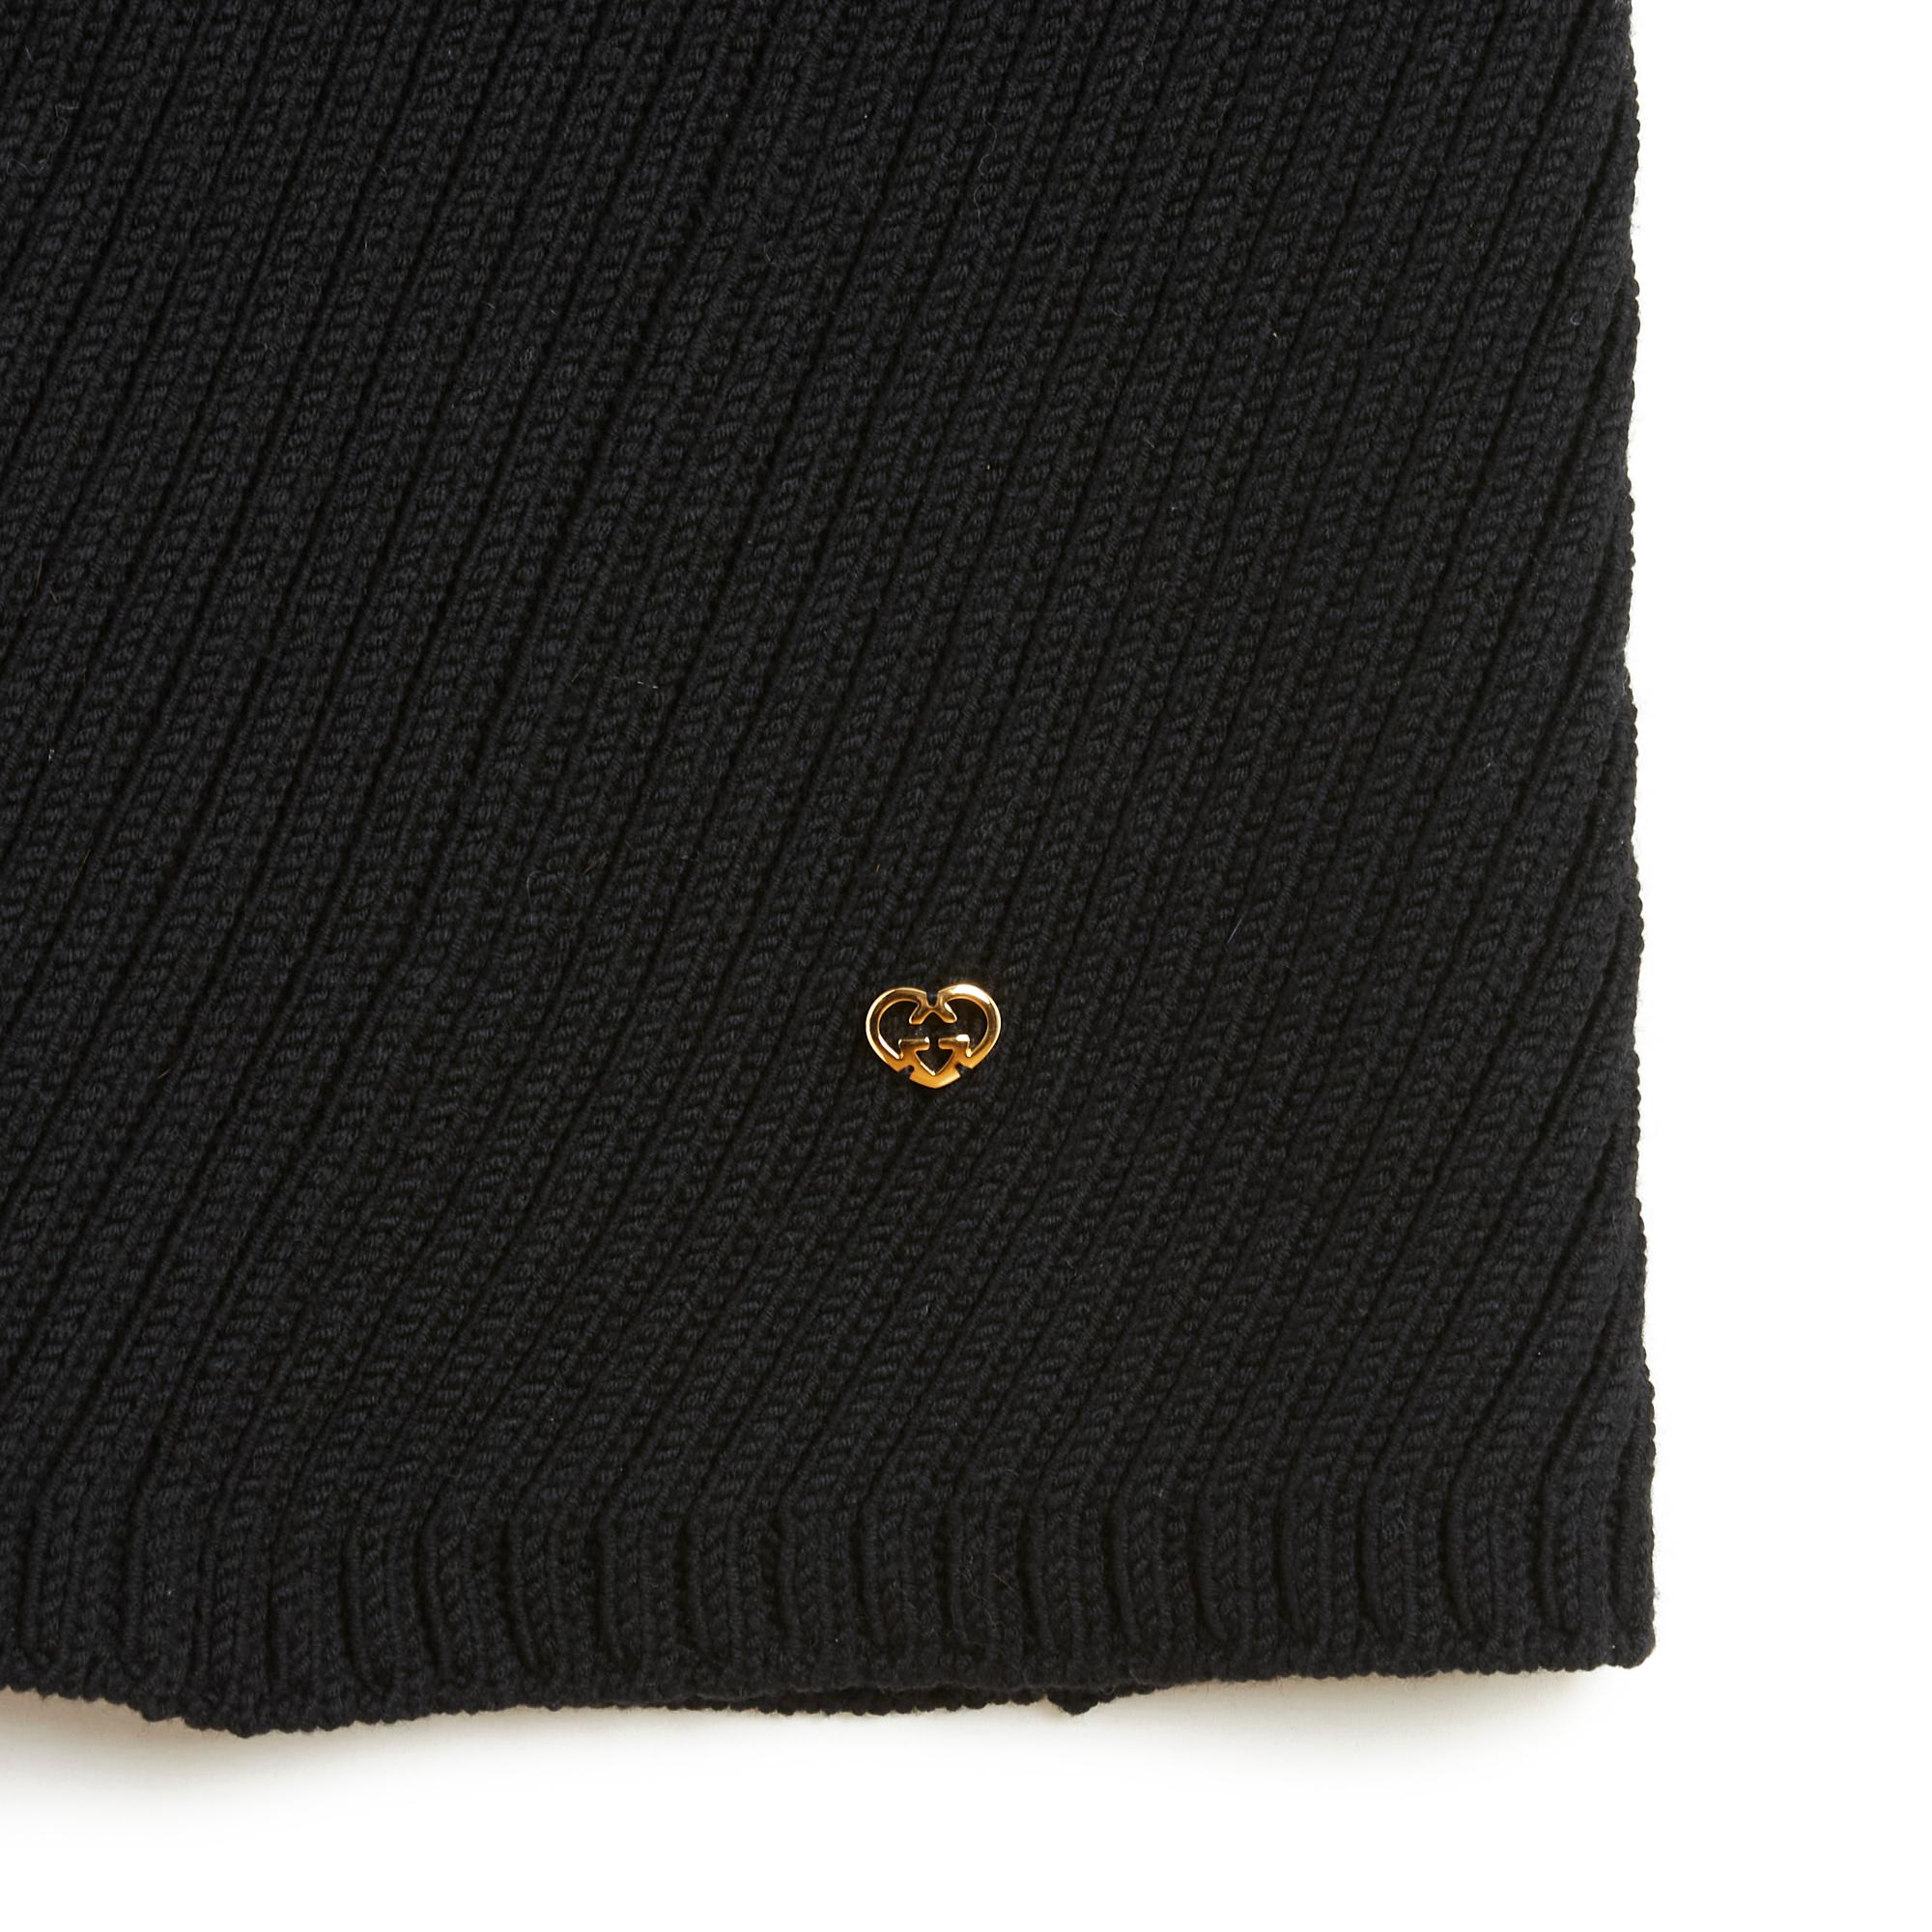 Gucci Minikleid aus dickem schwarzem Rippenstrick, ärmellos, mit Rollkragen, ungefüttert. Größe S, d.h. 36Fr (Maße ohne Dehnung des Netzes): Schulterbreite 31 cm (gleiche Breite über die gesamte Höhe des Kleides), Länge 92 cm. Das Kleid ist in